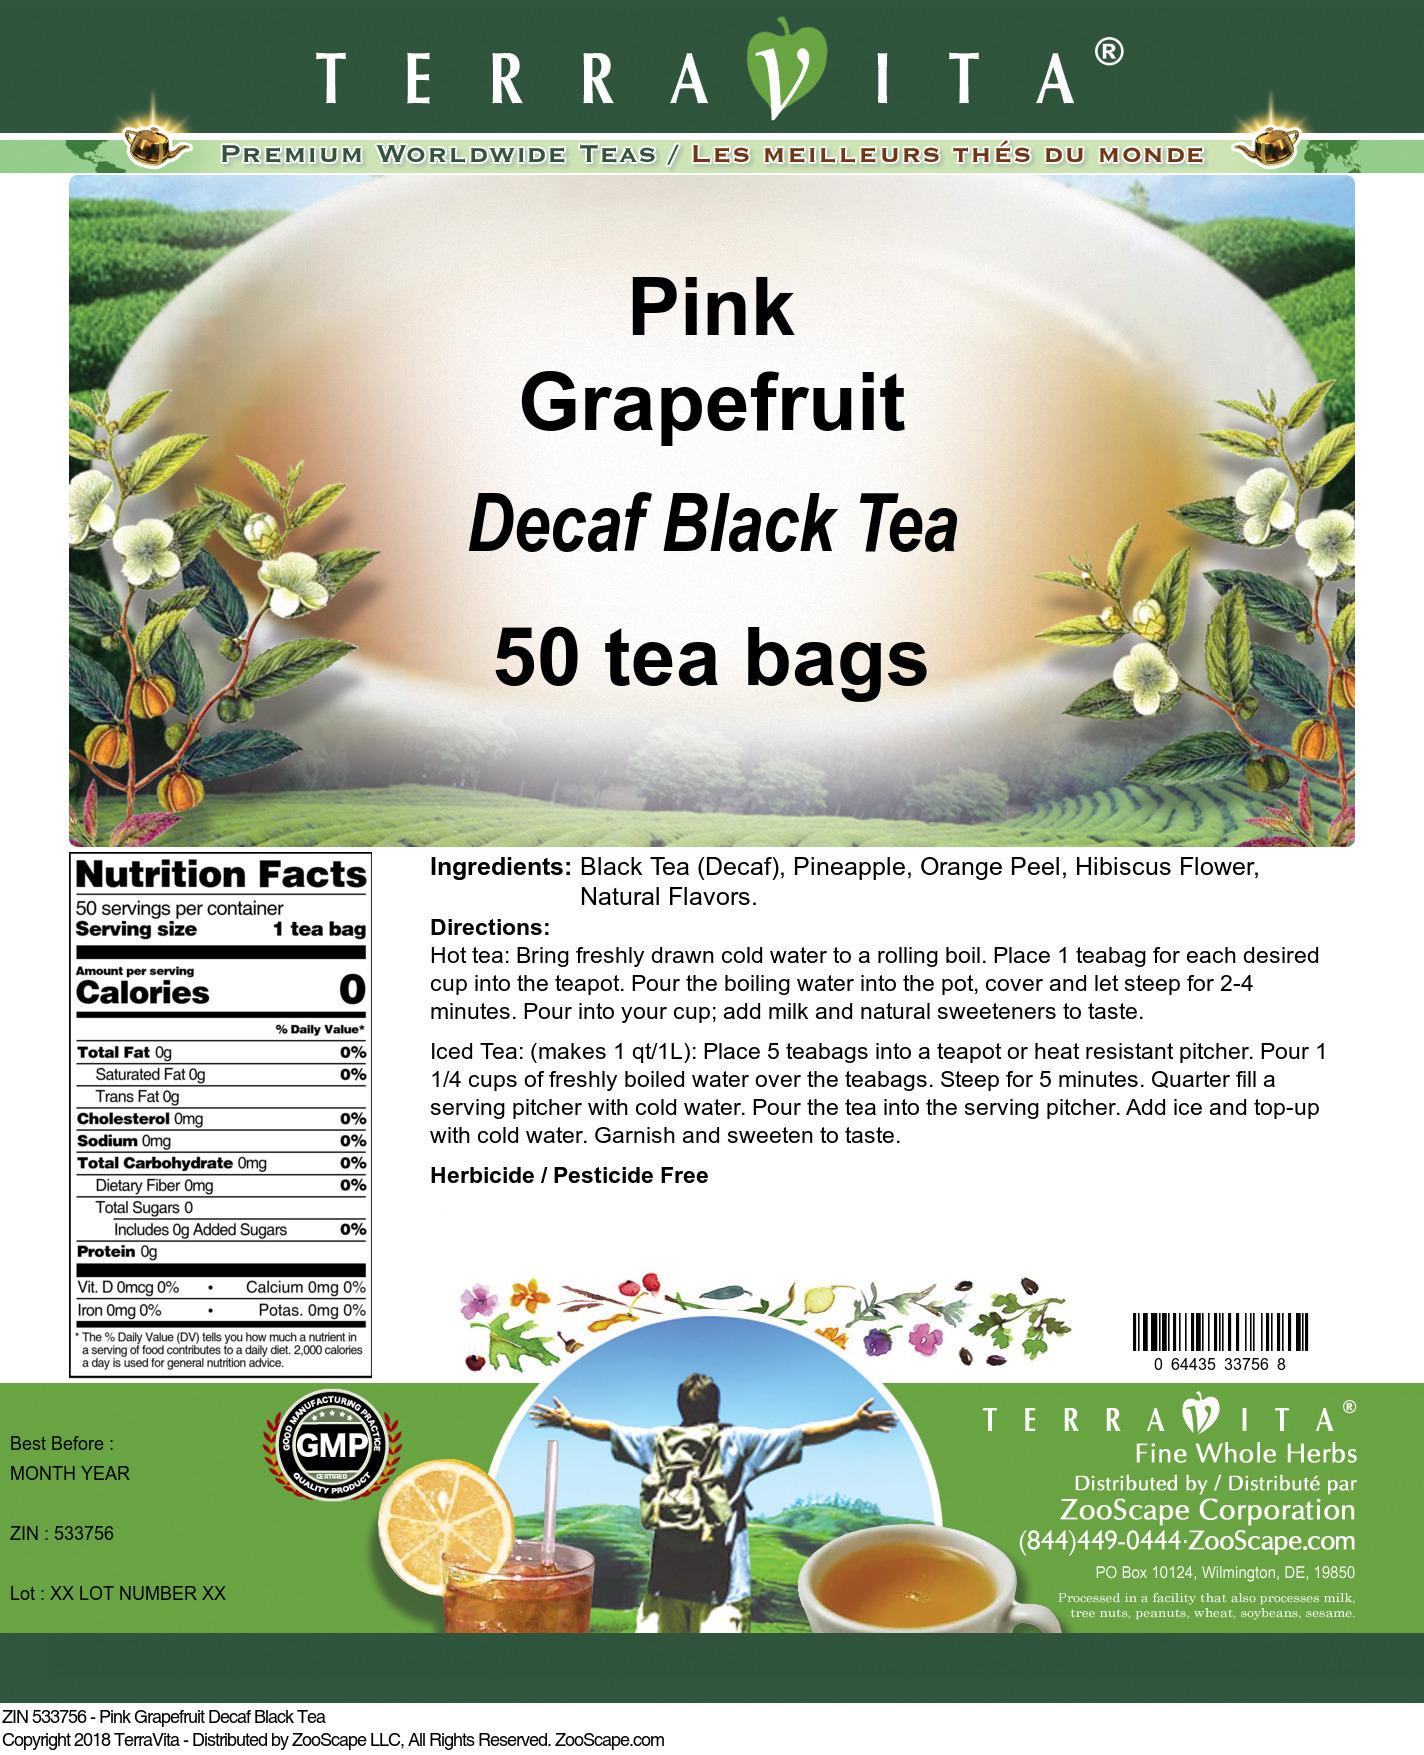 Pink Grapefruit Decaf Black Tea - Label